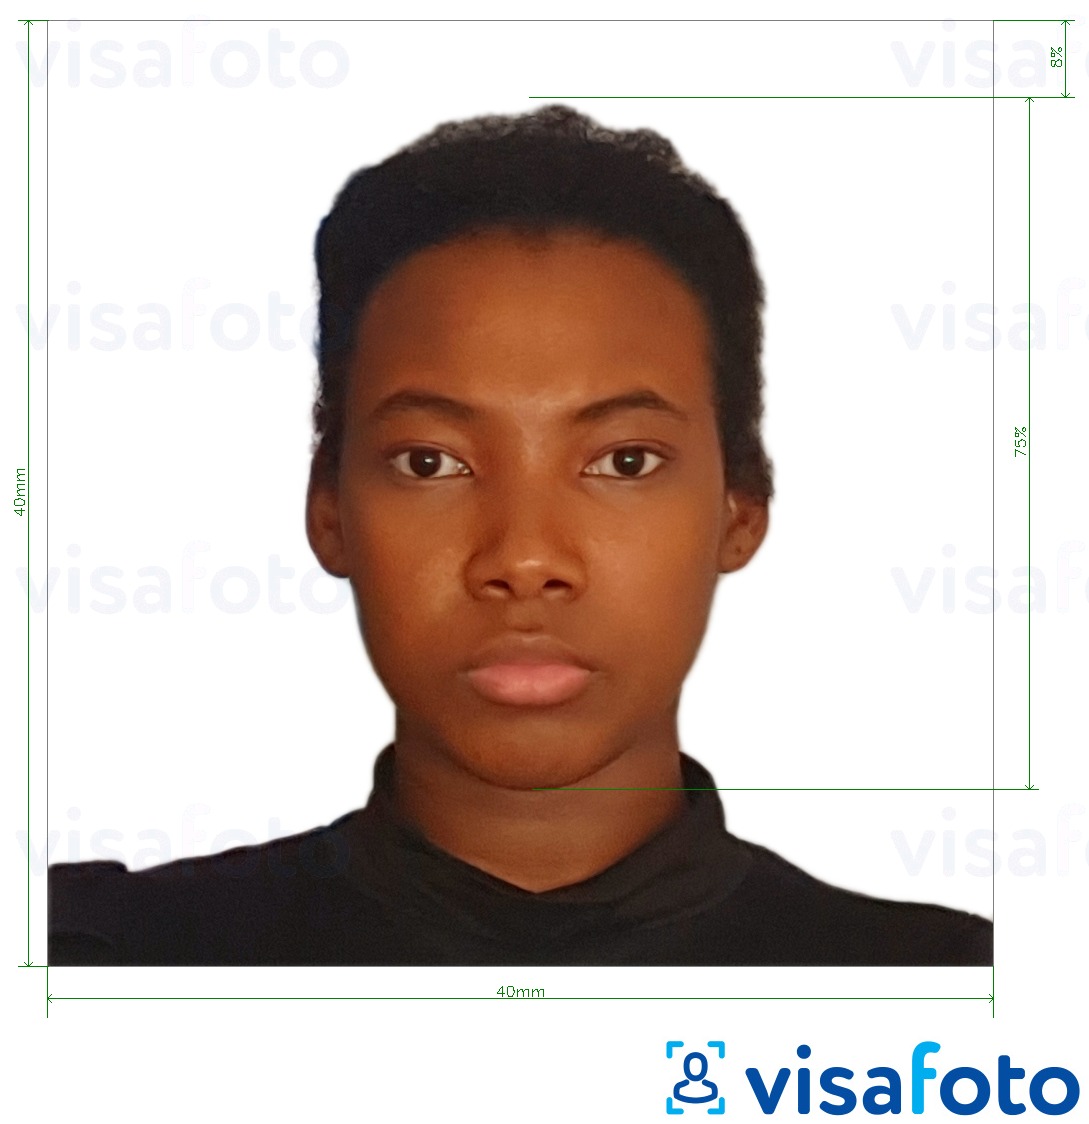 Пример за снимка за Камерунски паспорт 4х4 см (40x40 мм) с точна спецификация за размер